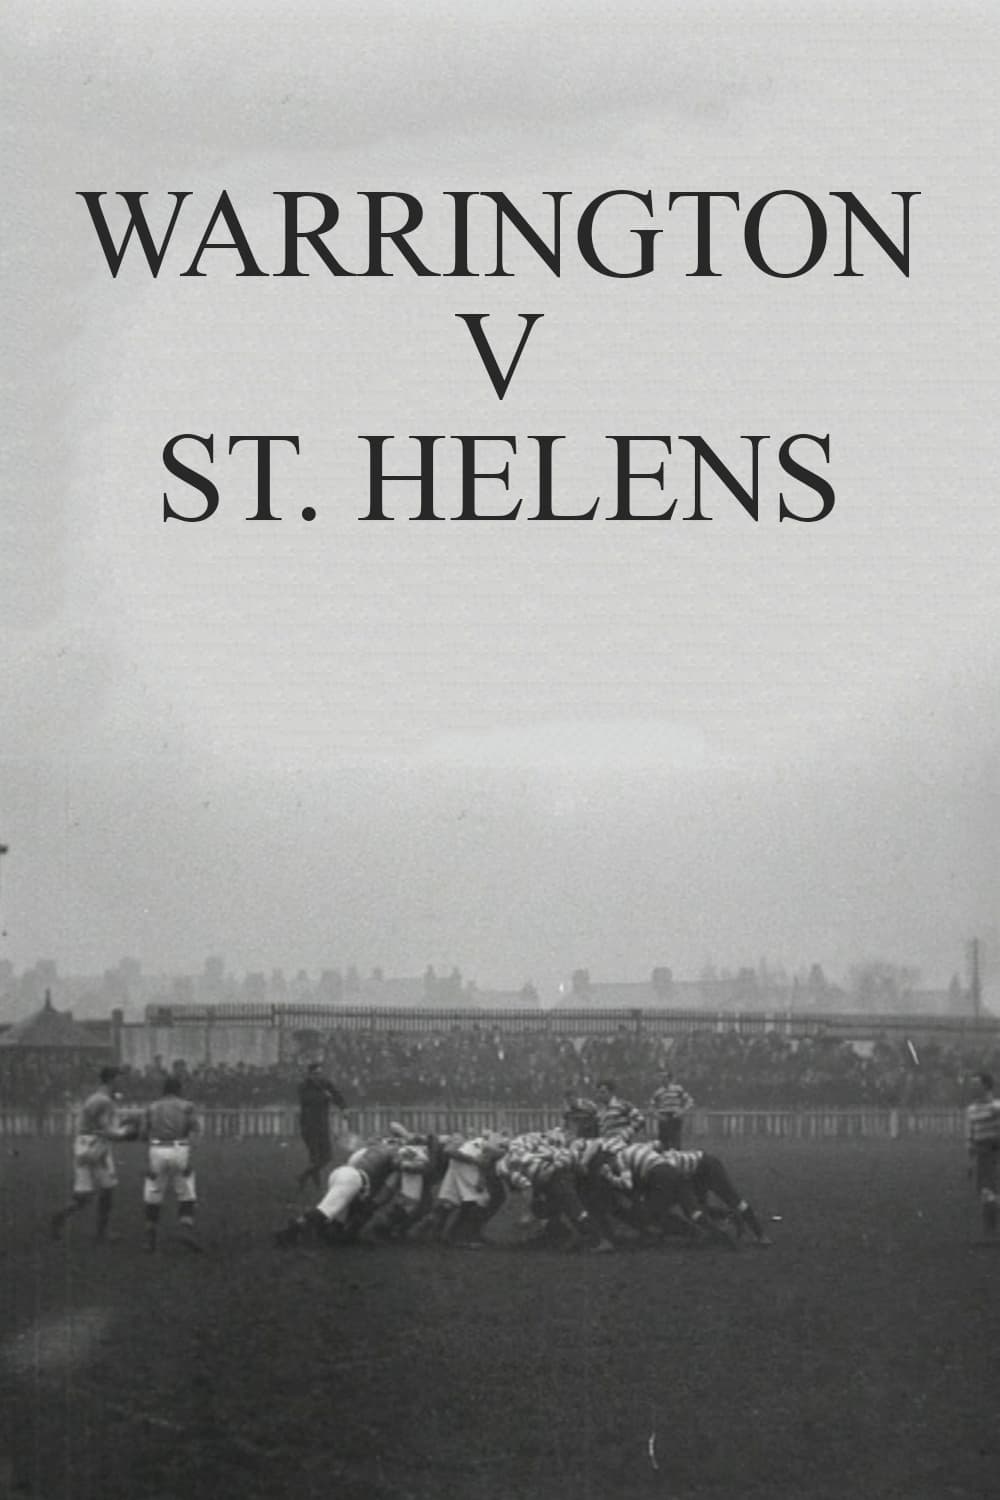 Warrington v. St. Helens